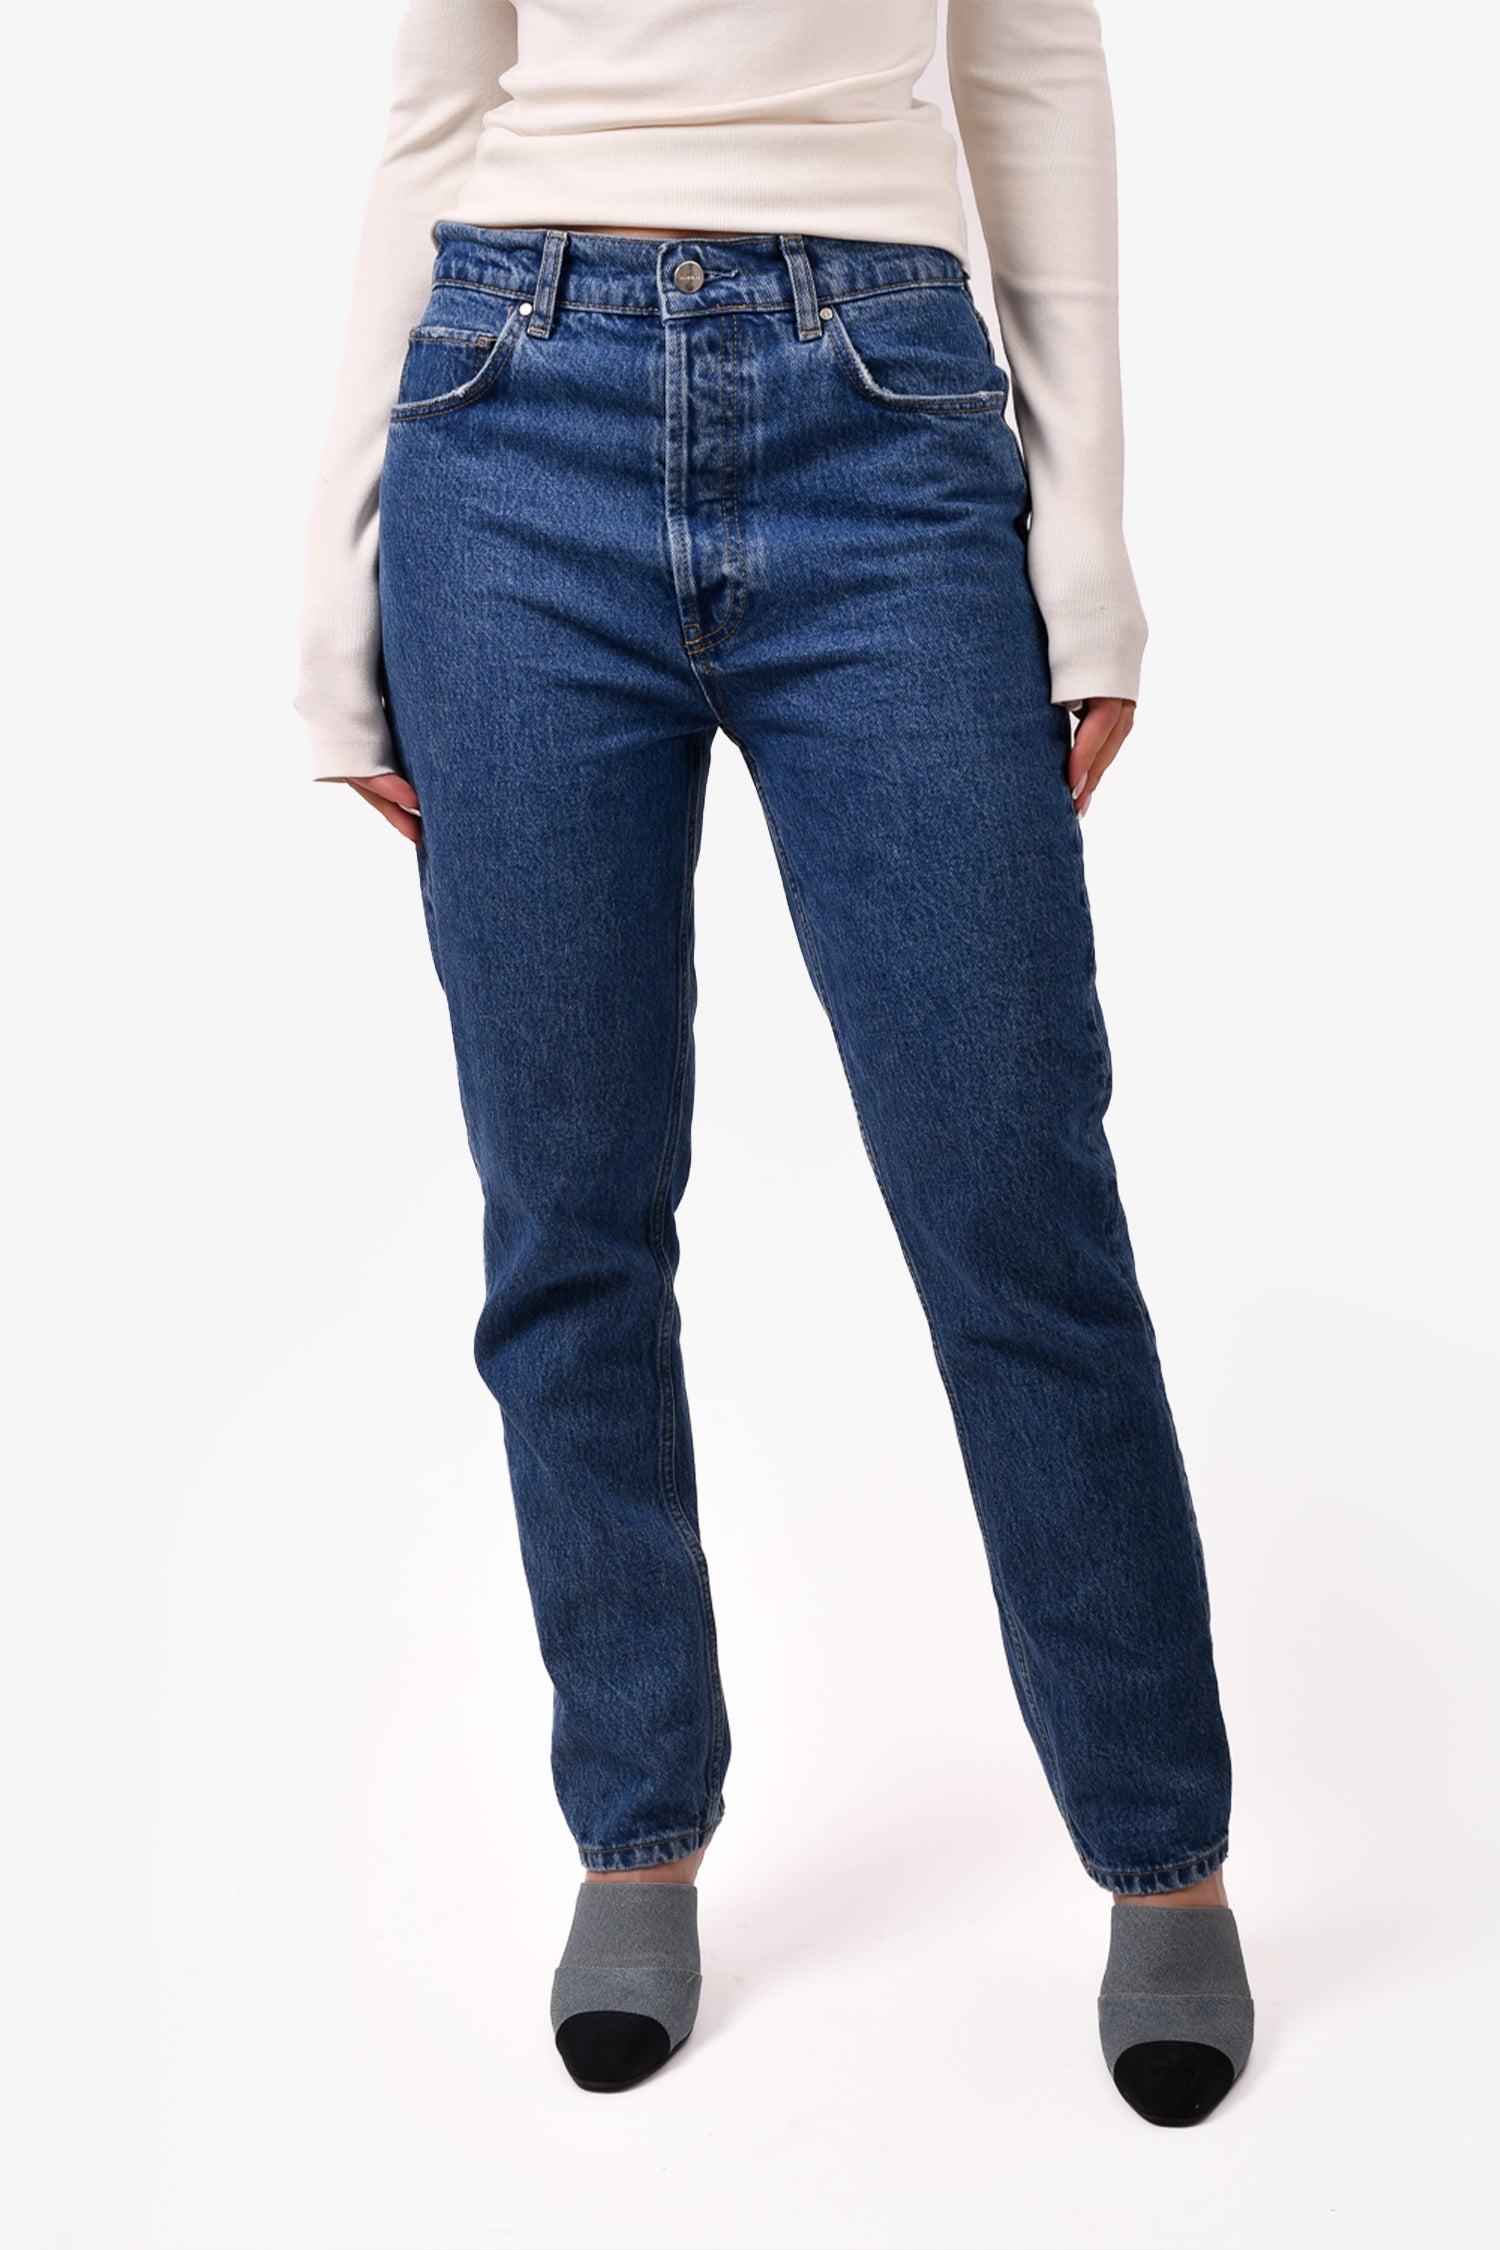 Anine Bing Dark Blue Wash Denim Straight Leg Jeans Size 29 – Mine & Yours